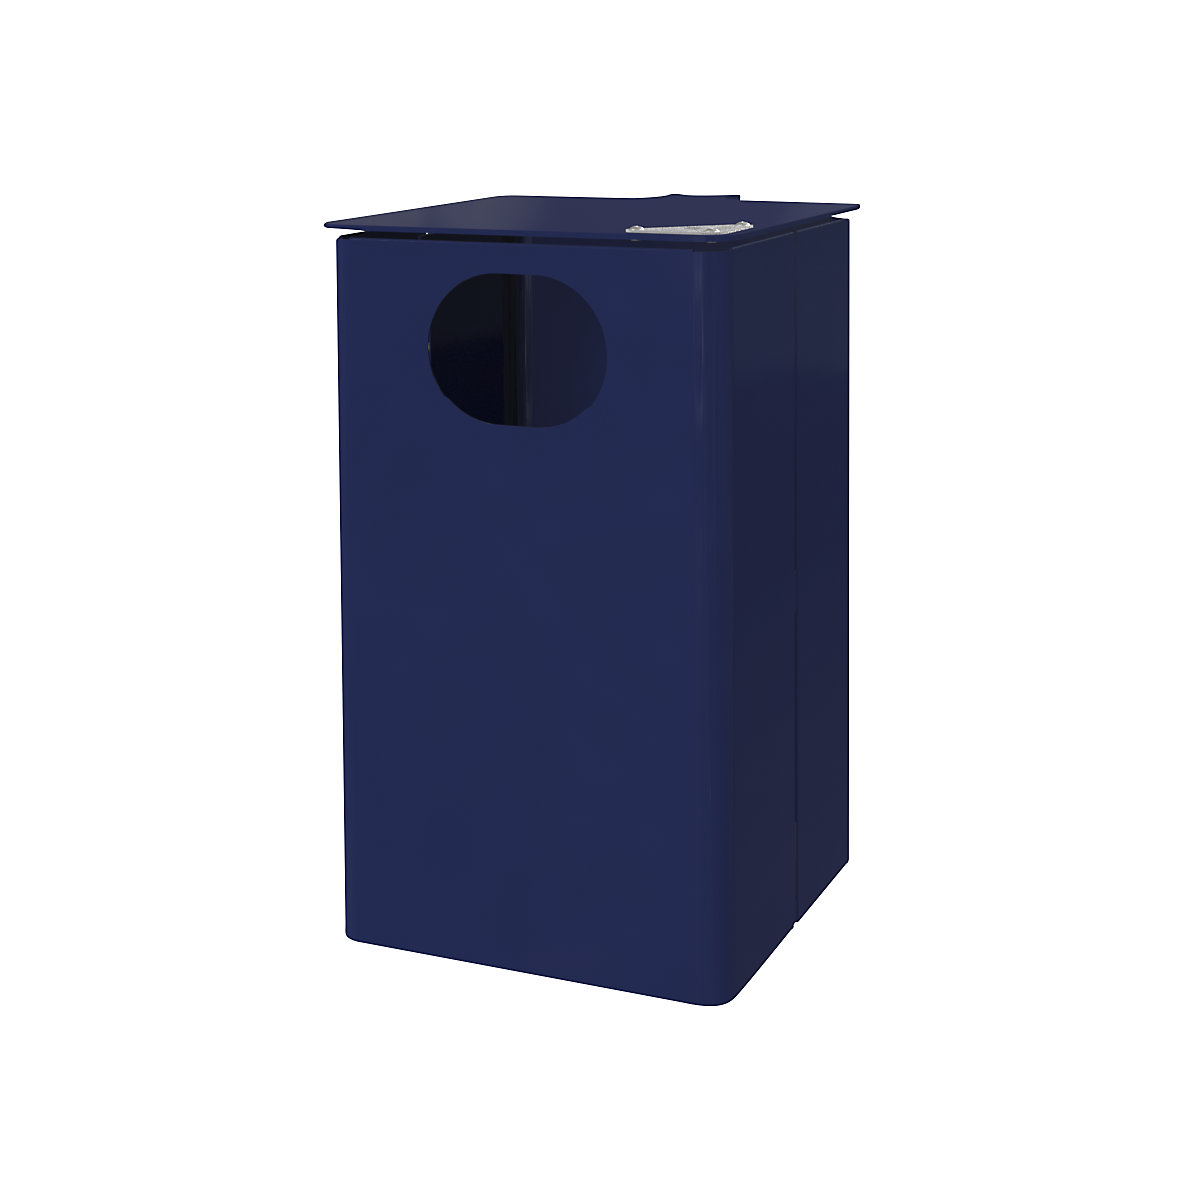 Venkovní nádoba na odpad s popelníkem, objem 35 l, v x š x h 537 x 325 x 388 mm, kobaltová modrá, od 3 ks-5